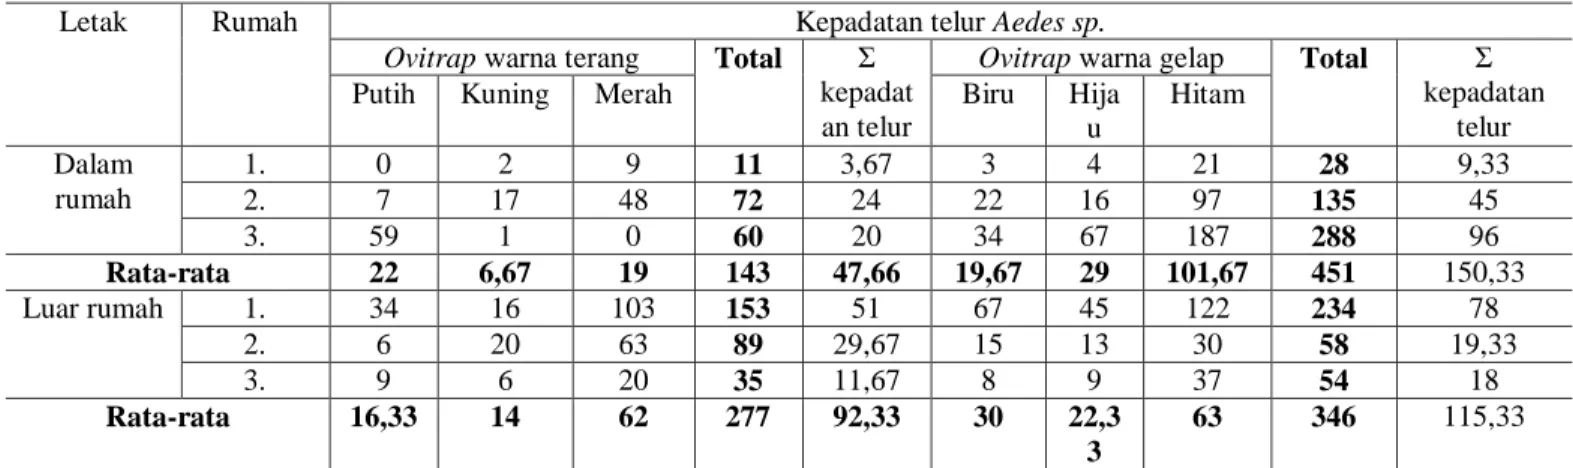 Tabel 5. Kepadatan telur Aedes sp. Berdasarkan Warna dan Ketinggian Tempat di Kota Kupang 